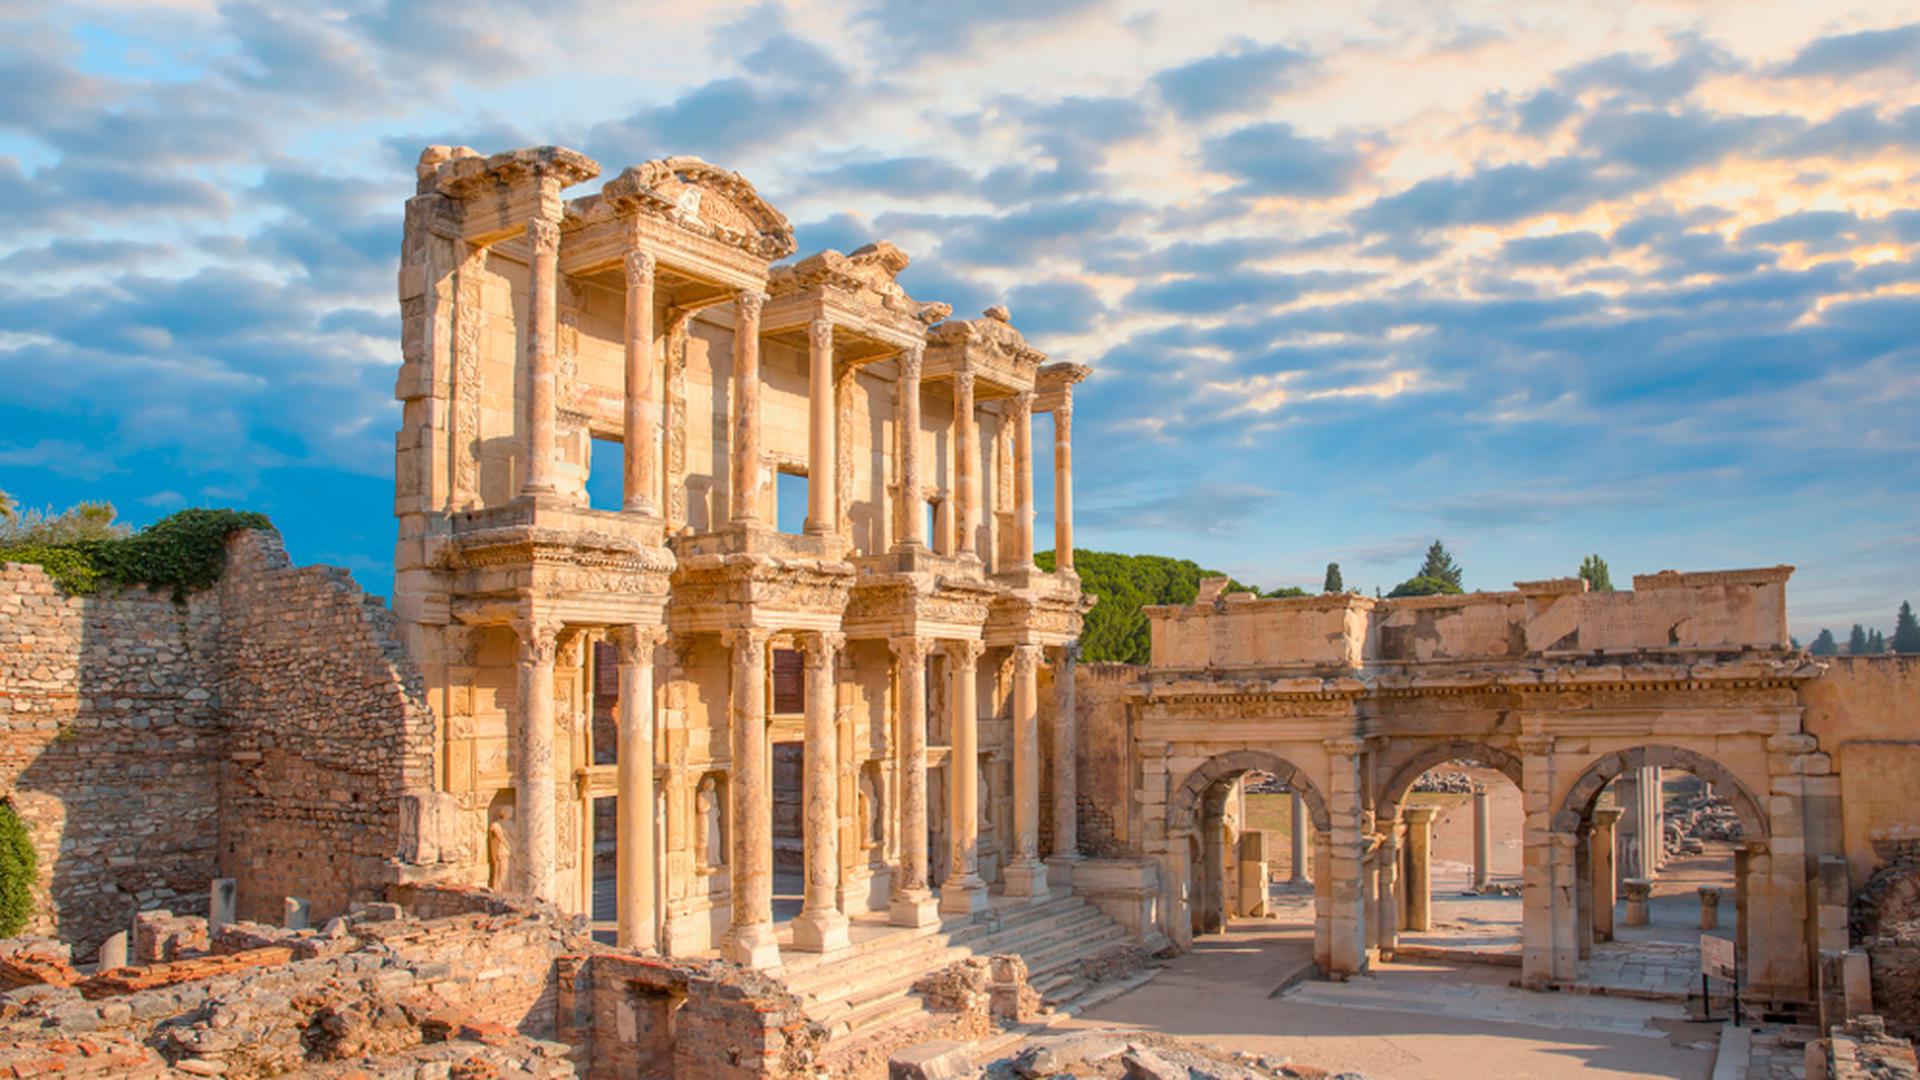 Consideradas uma das sete maravilhas do mundo, as ruínas romanas em Ephesus